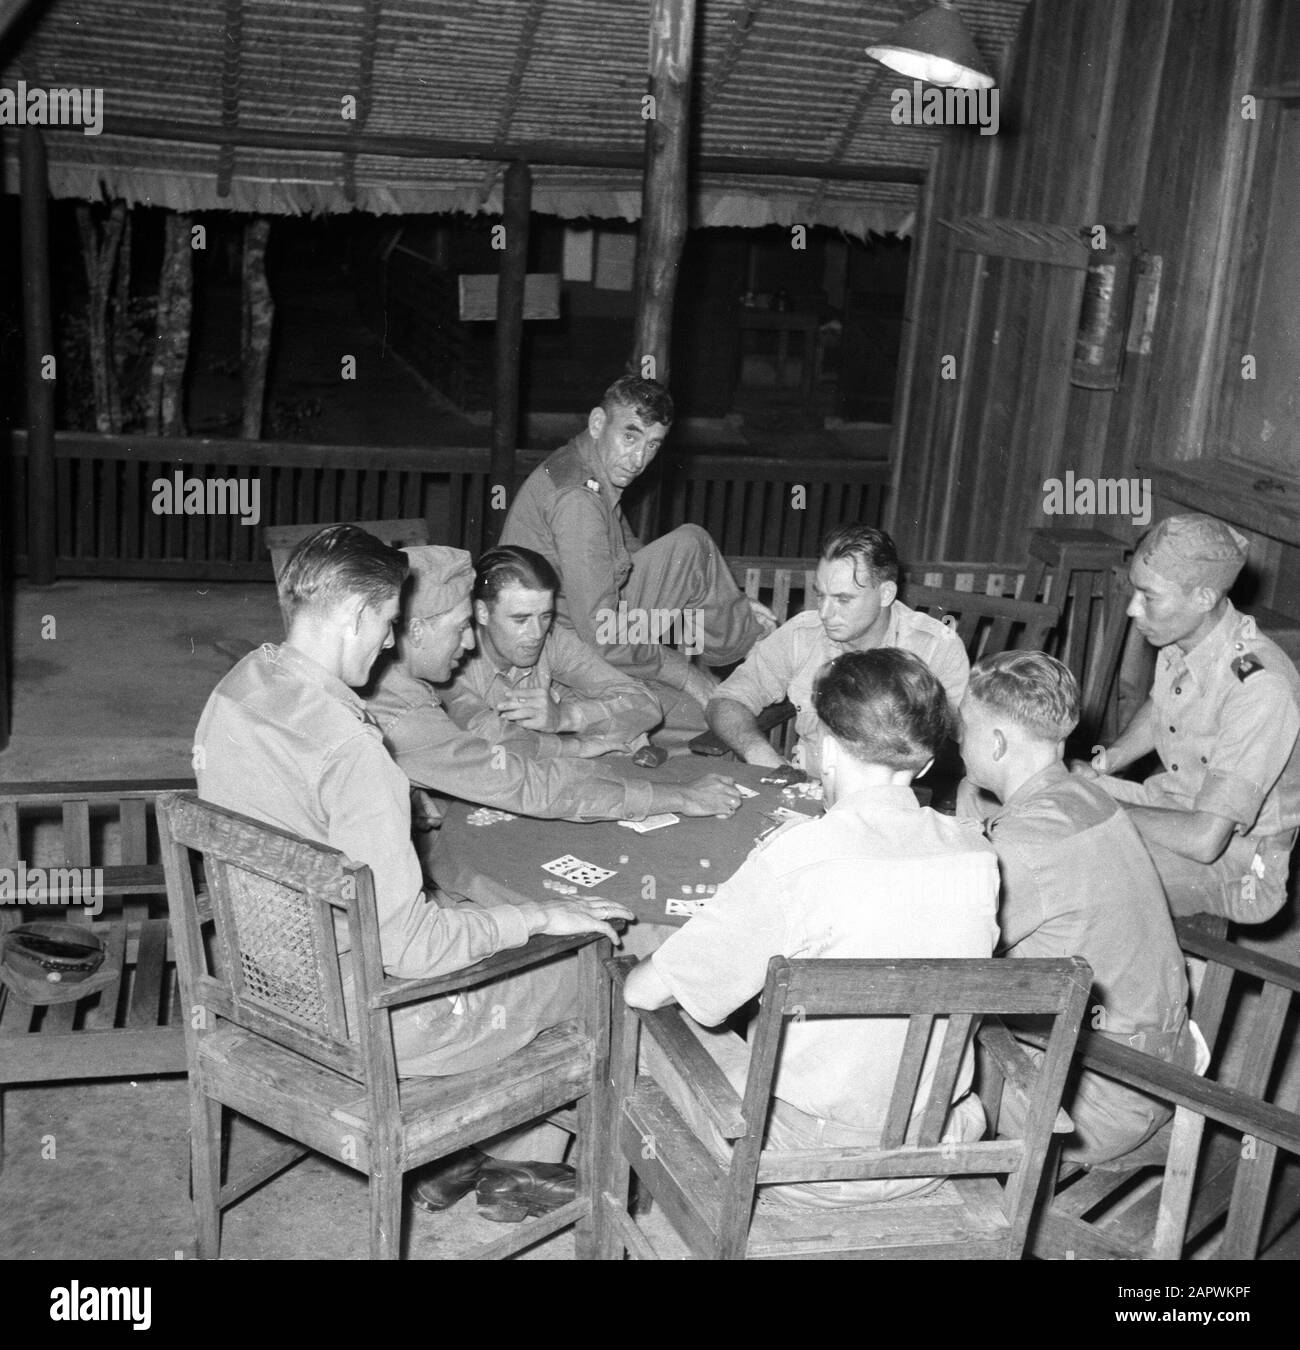 Viaggio in Suriname e Antille Olandesi carte da gioco militari nel loro campo Data: 1947 luogo: Suriname Parole Chiave: Giochi di carte, militari Foto Stock